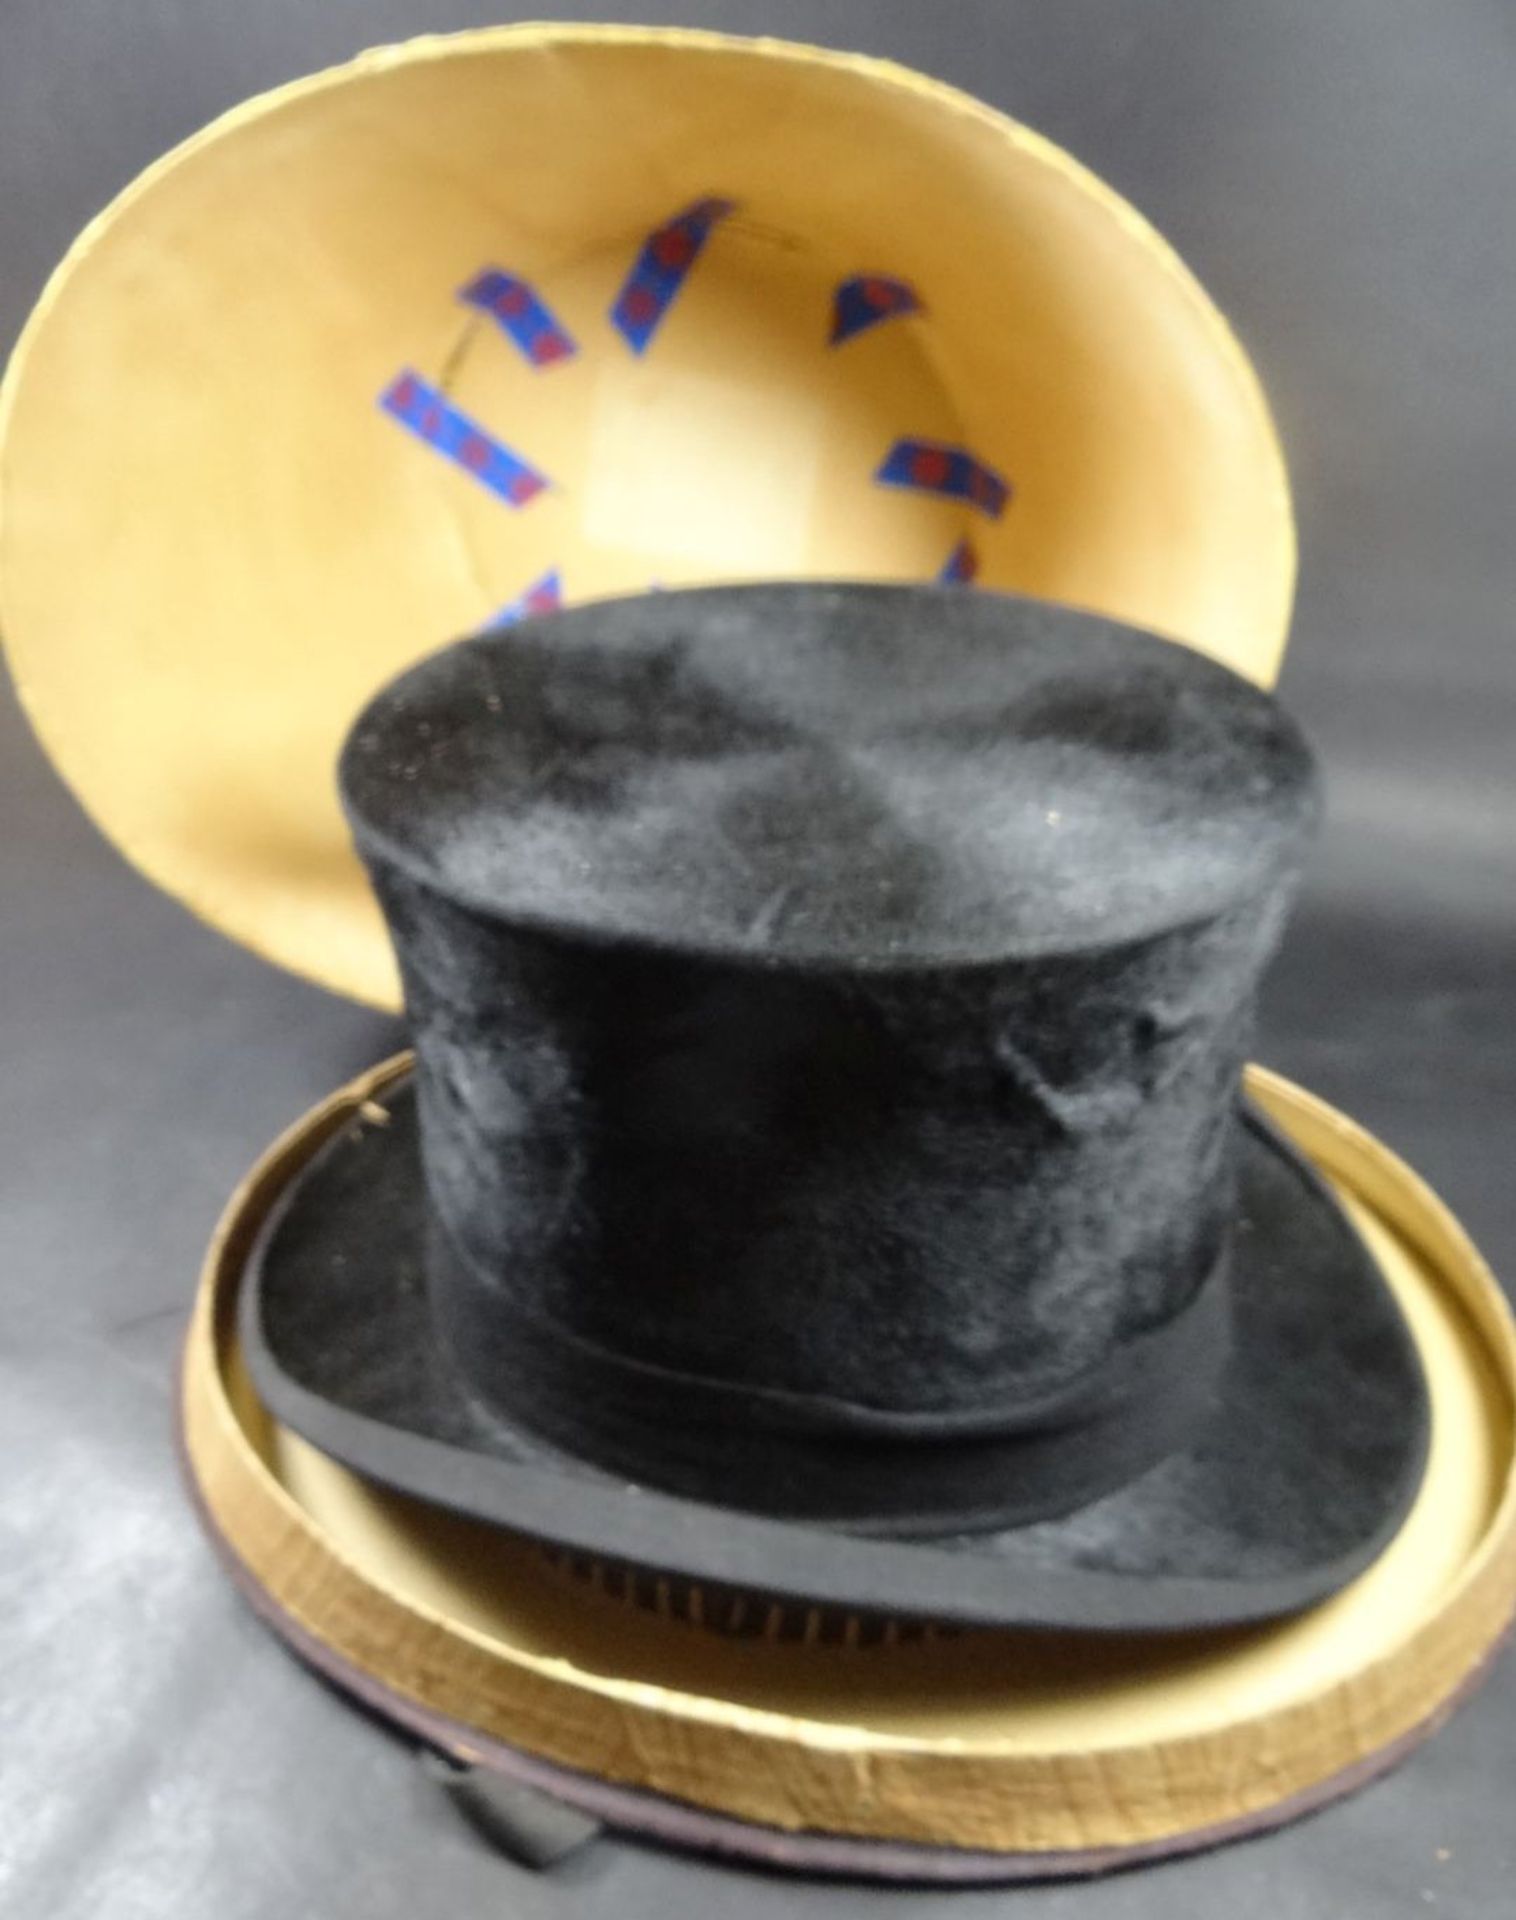 Zylinder in alter Hutschachtel, diese beschädigt, Hut sehr guter Zustan- - -22.61 % buyer's